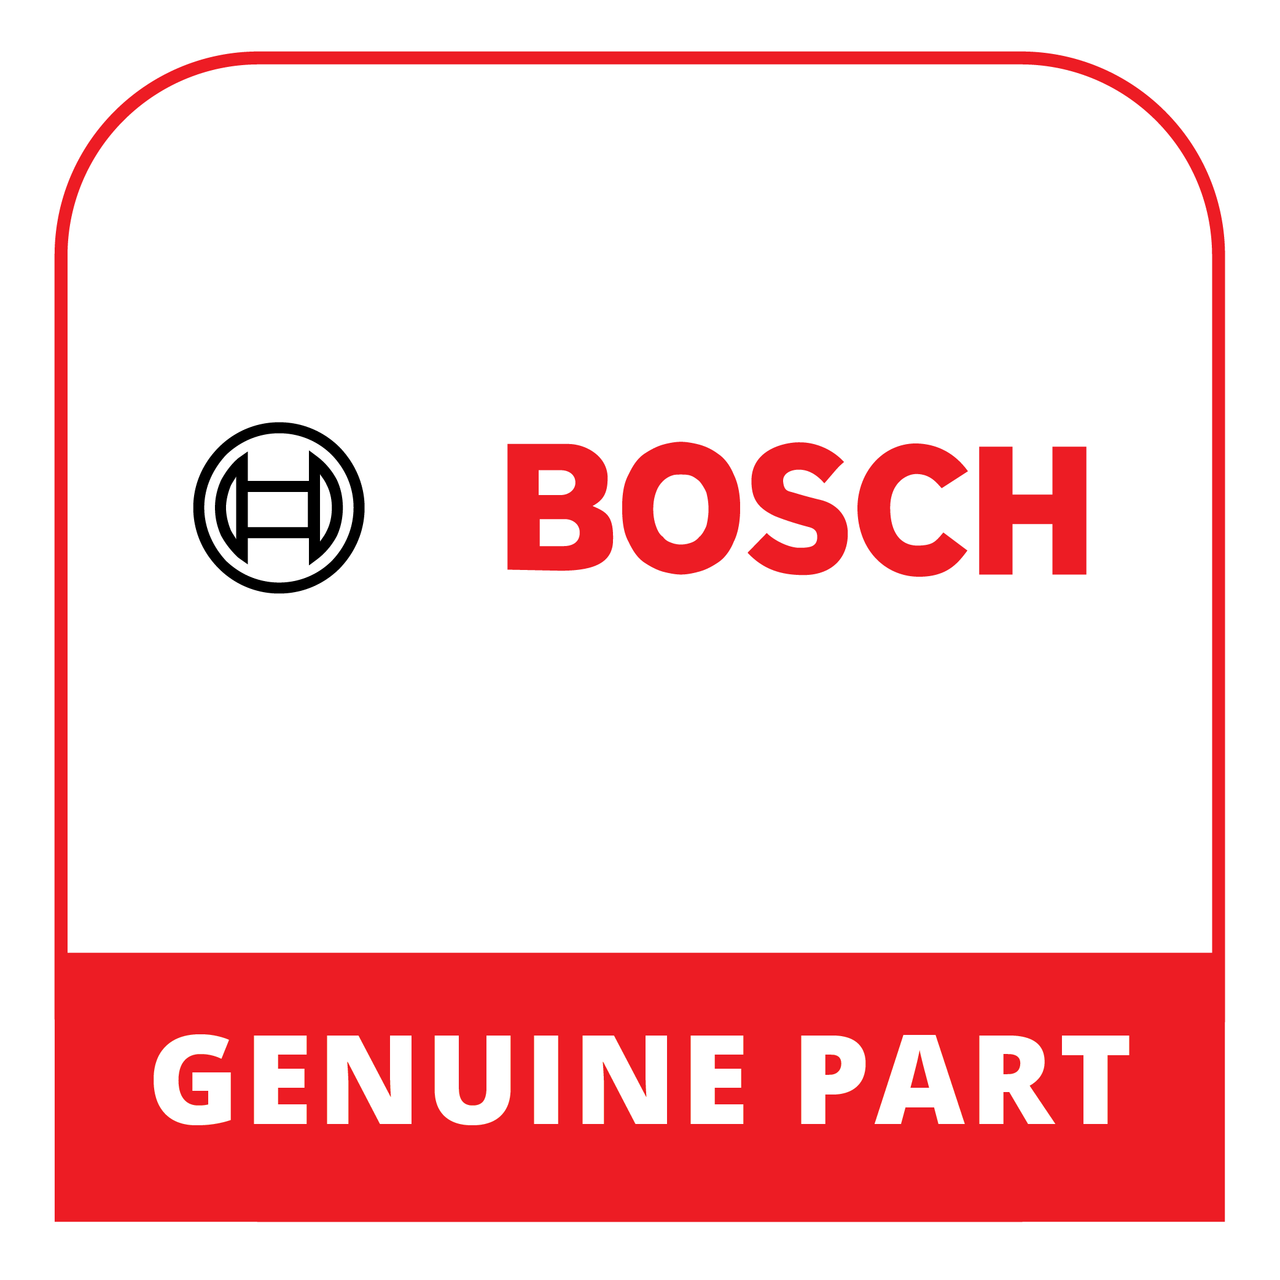 Bosch (Thermador) 23001244 - Door - Genuine Bosch (Thermador) Part